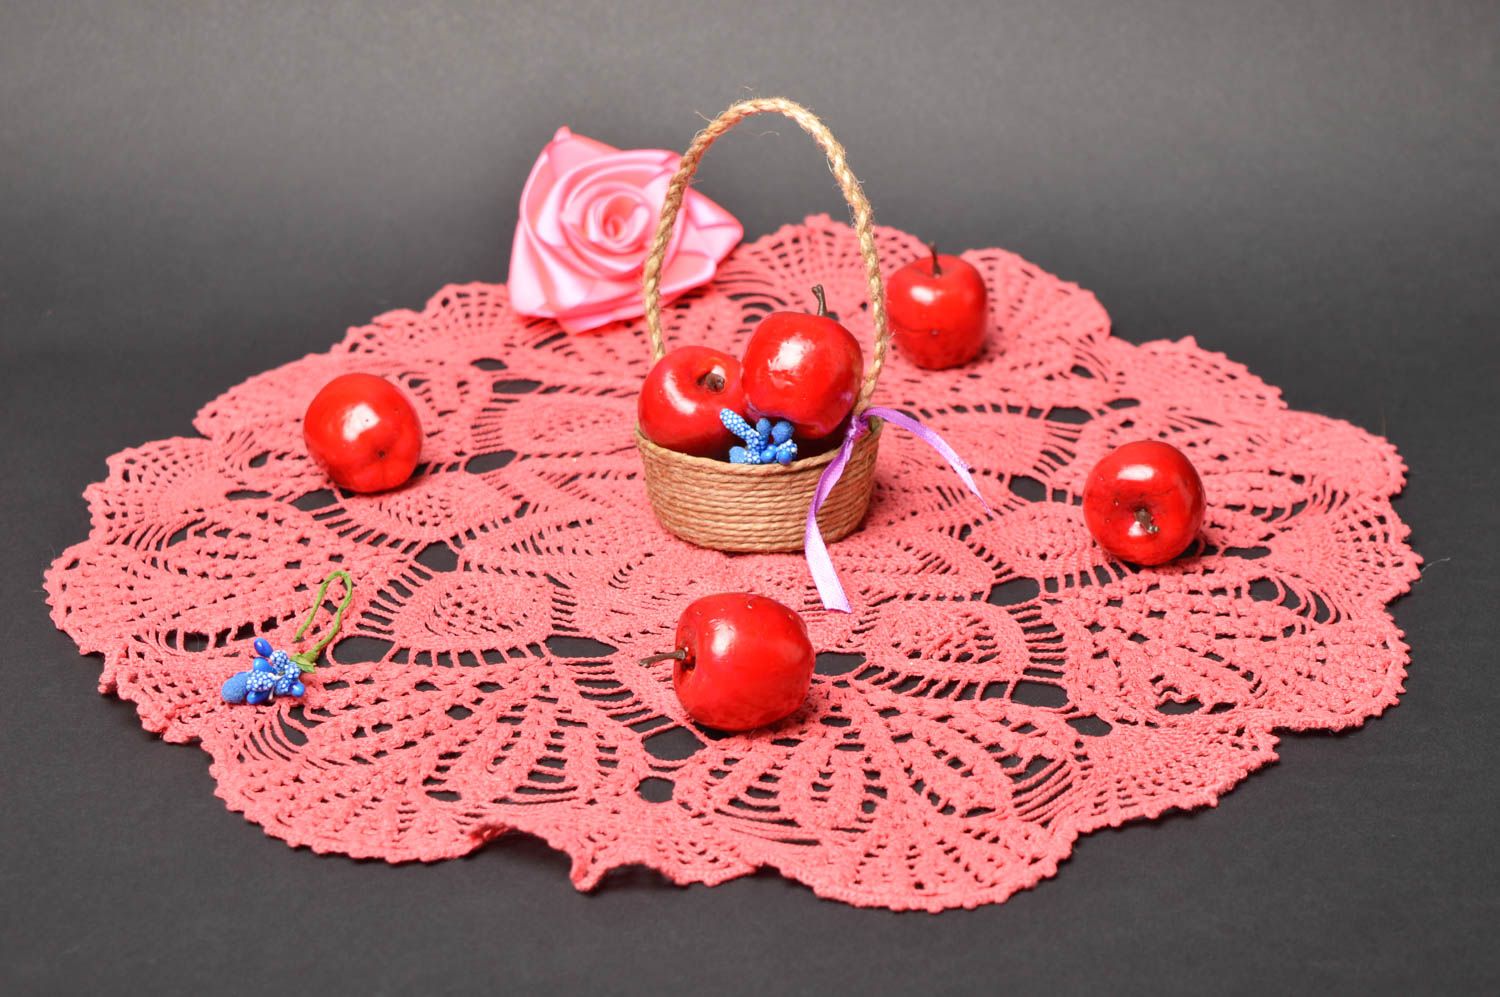 Napperon ovale fait main Déco cuisine tricoté en coton rose ajouré Cadeau femme photo 1